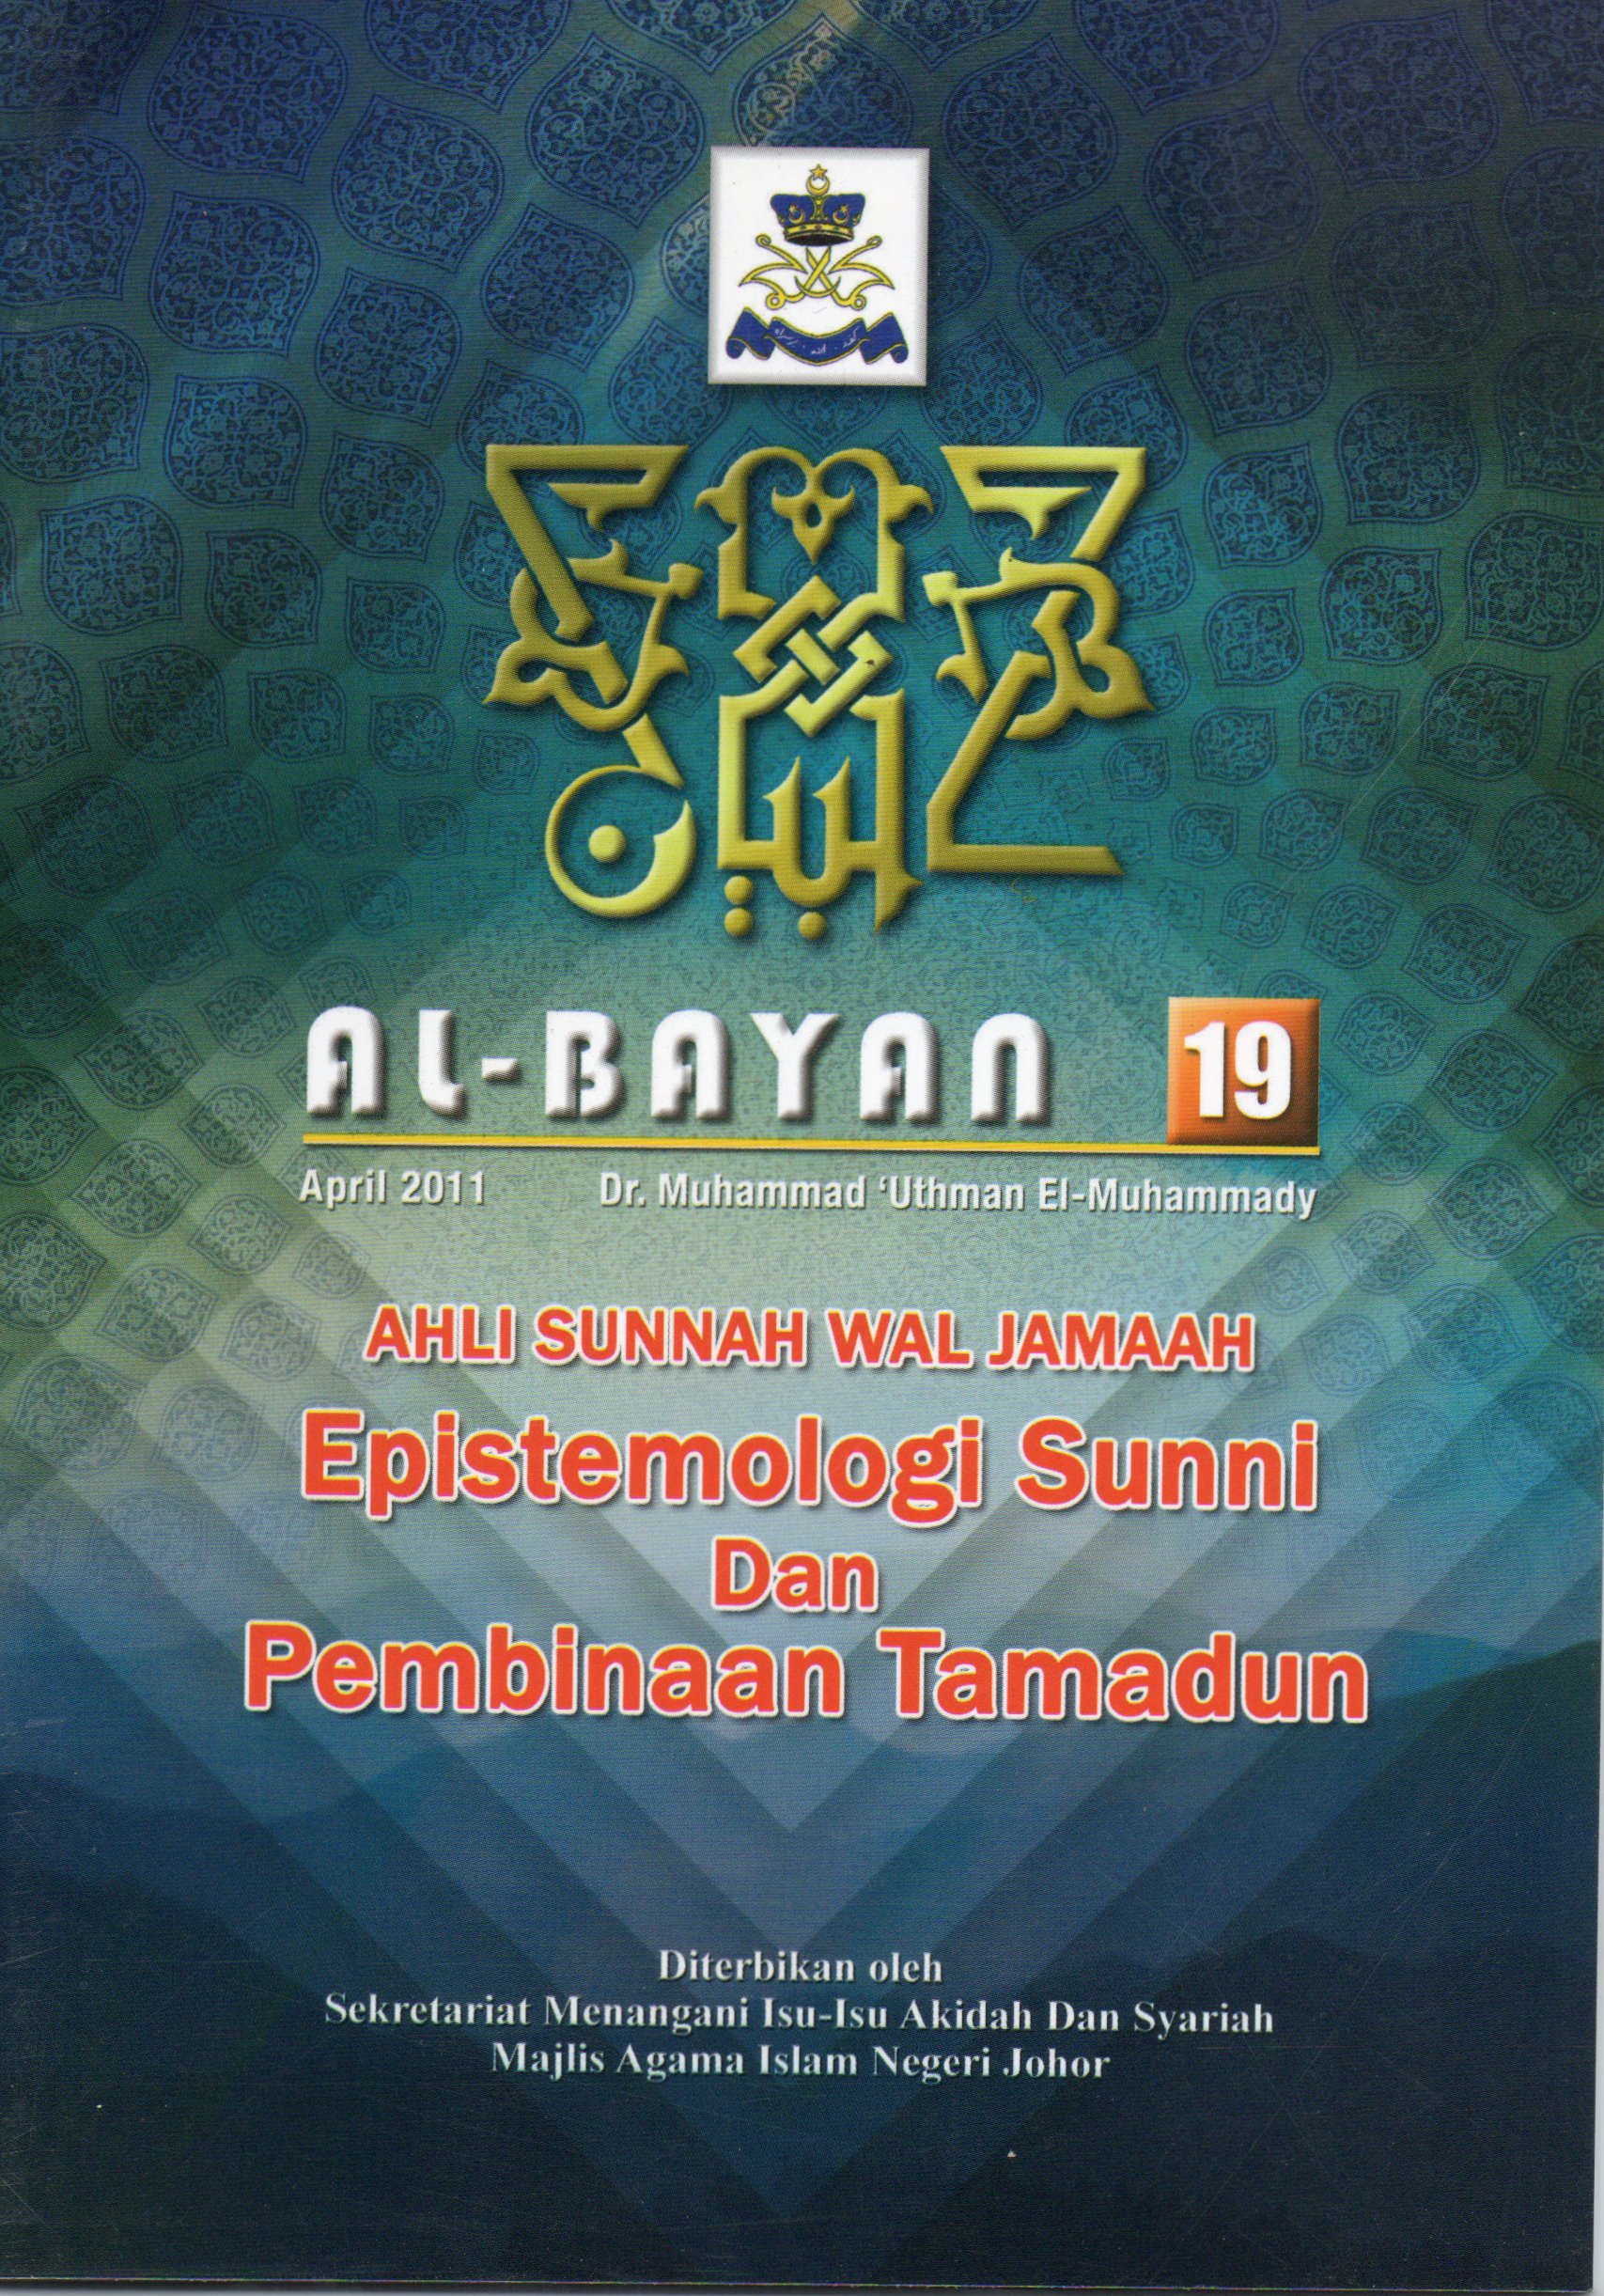 Al-Bayan 19: ahli sunnah wal jamaah, epistimologi suni dan pembinaan tamadun